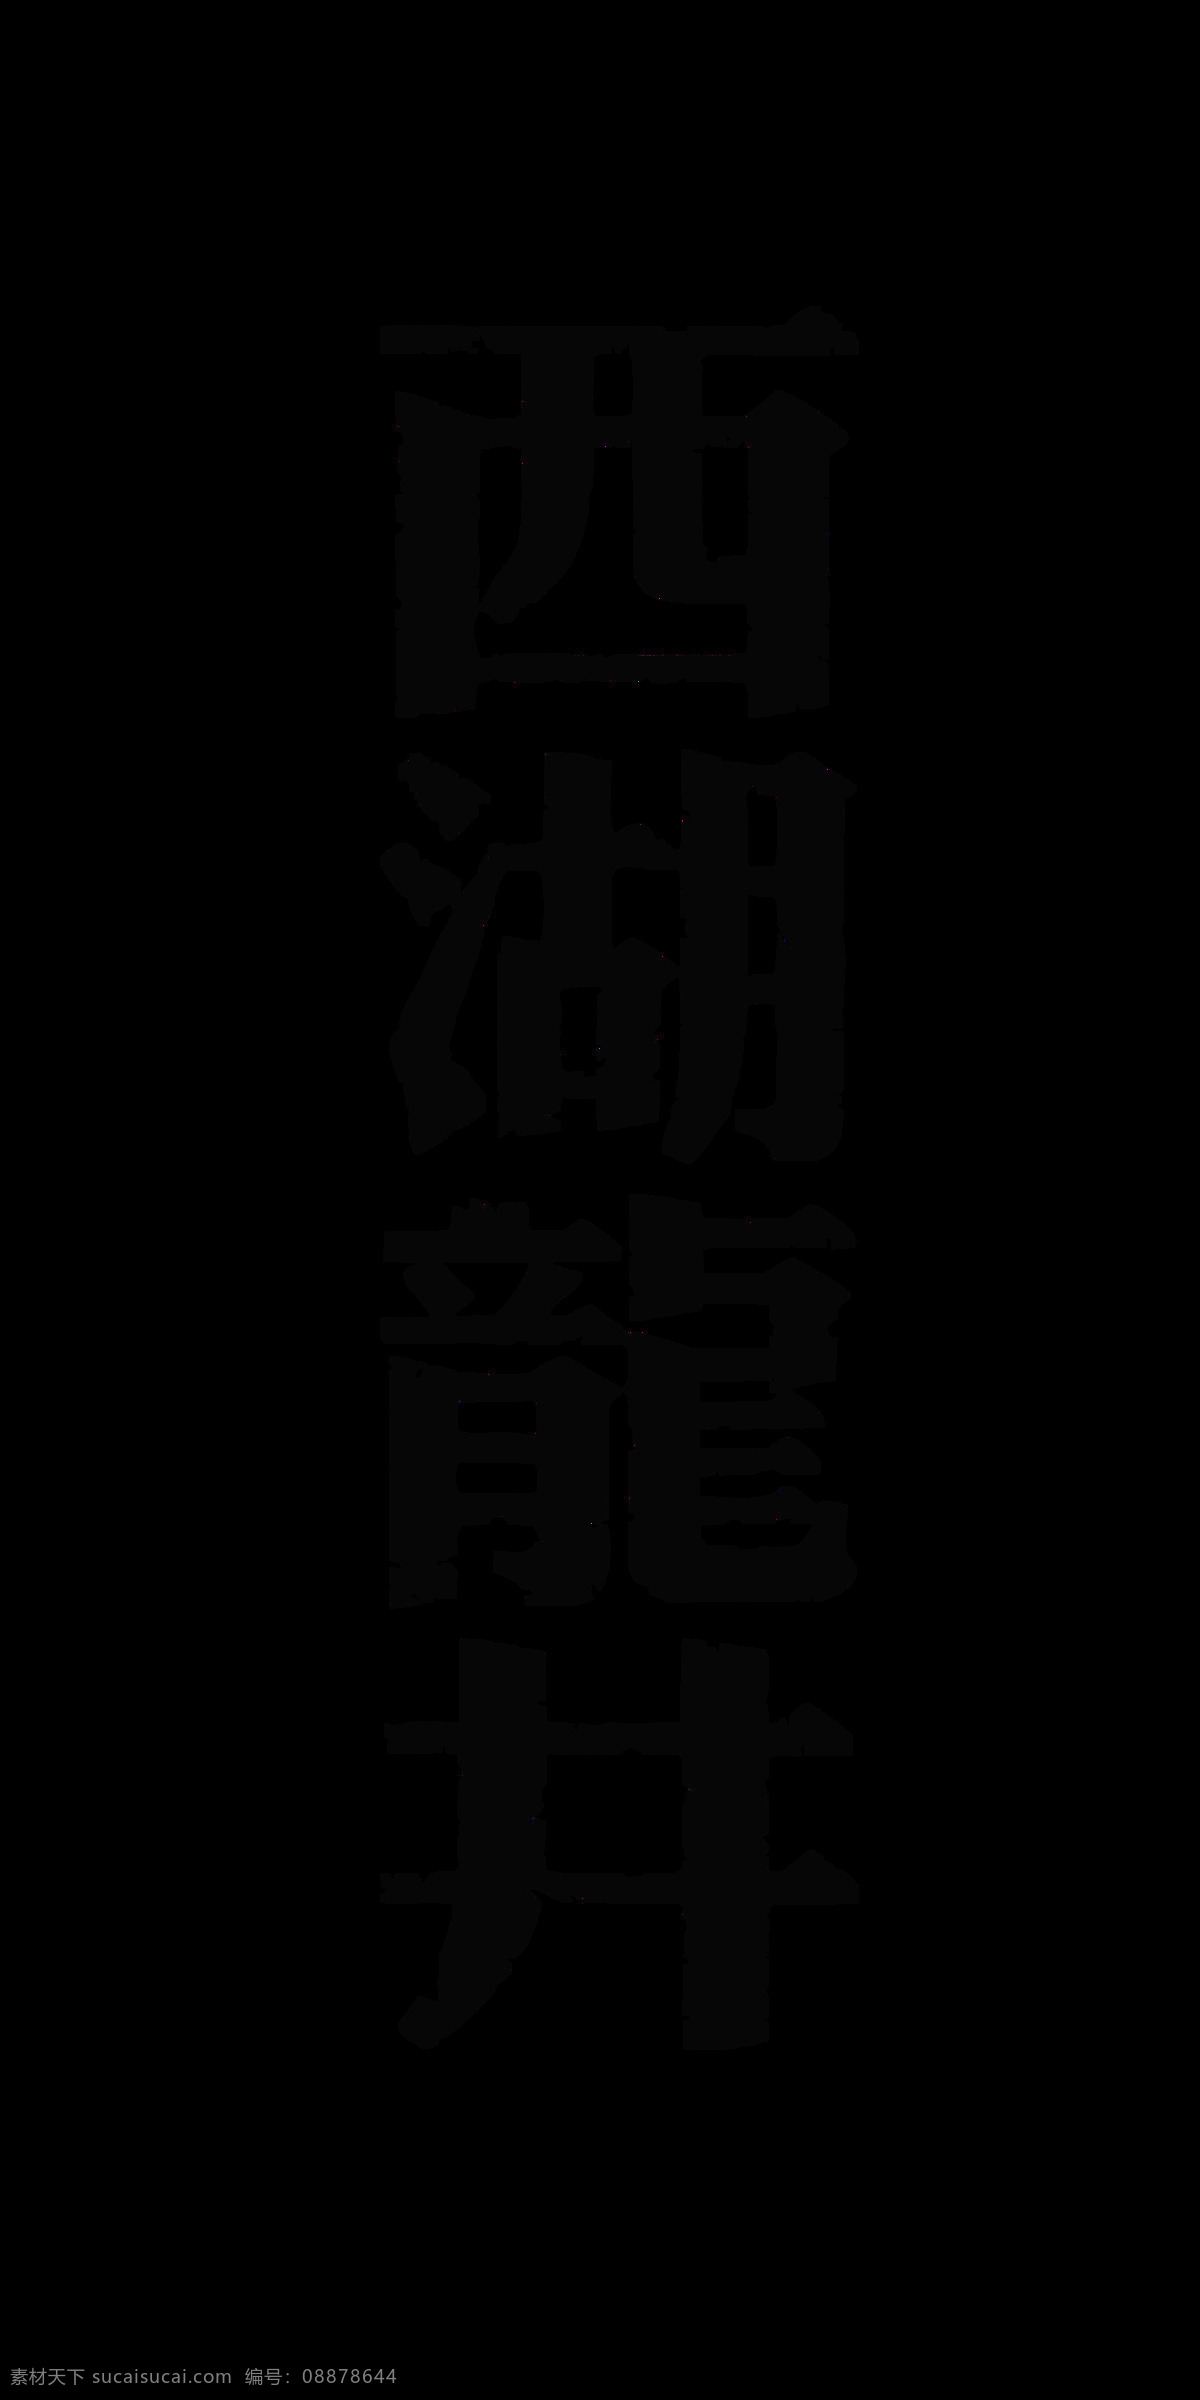 西湖 龙井 竖 版 字体 艺术 字 茶叶 茶艺 广告 宣传 促销 西湖龙井 艺术字 竖版字体 海报